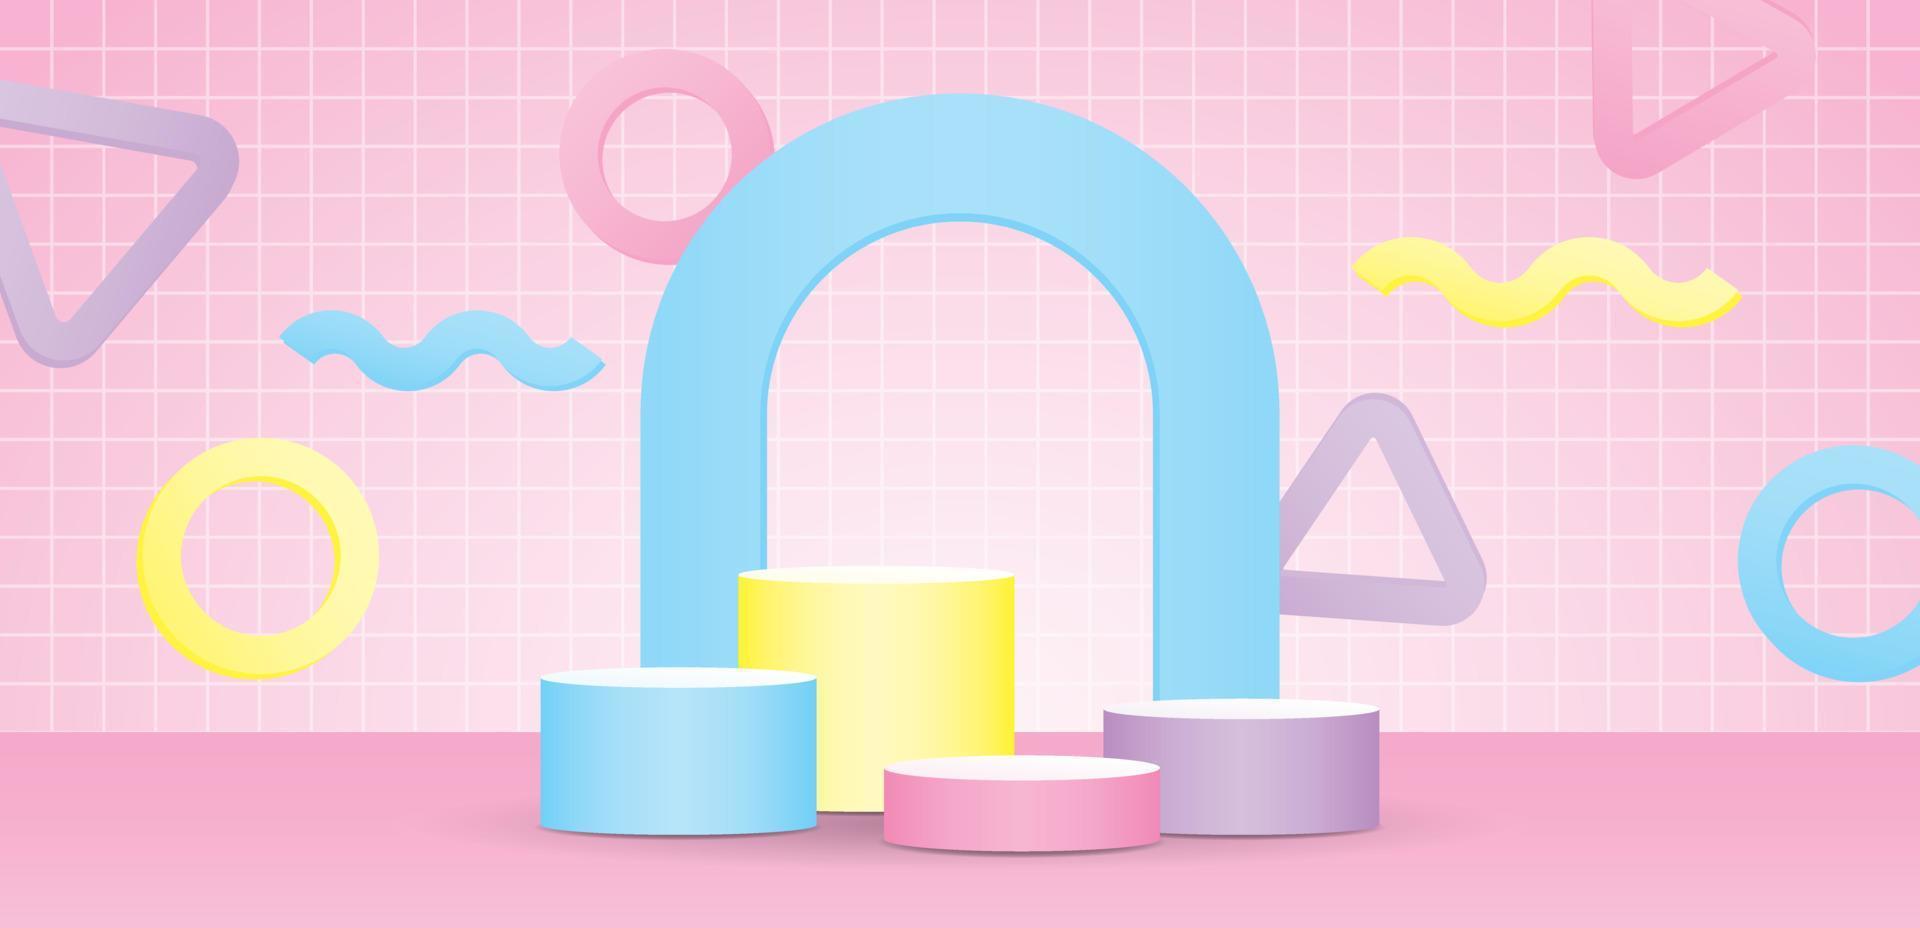 lindo podio de producto colorido pastel con arco y elemento geométrico divertido vector de ilustración 3d en la pared de patrón de cuadrícula y fondo de piso rosa dulce